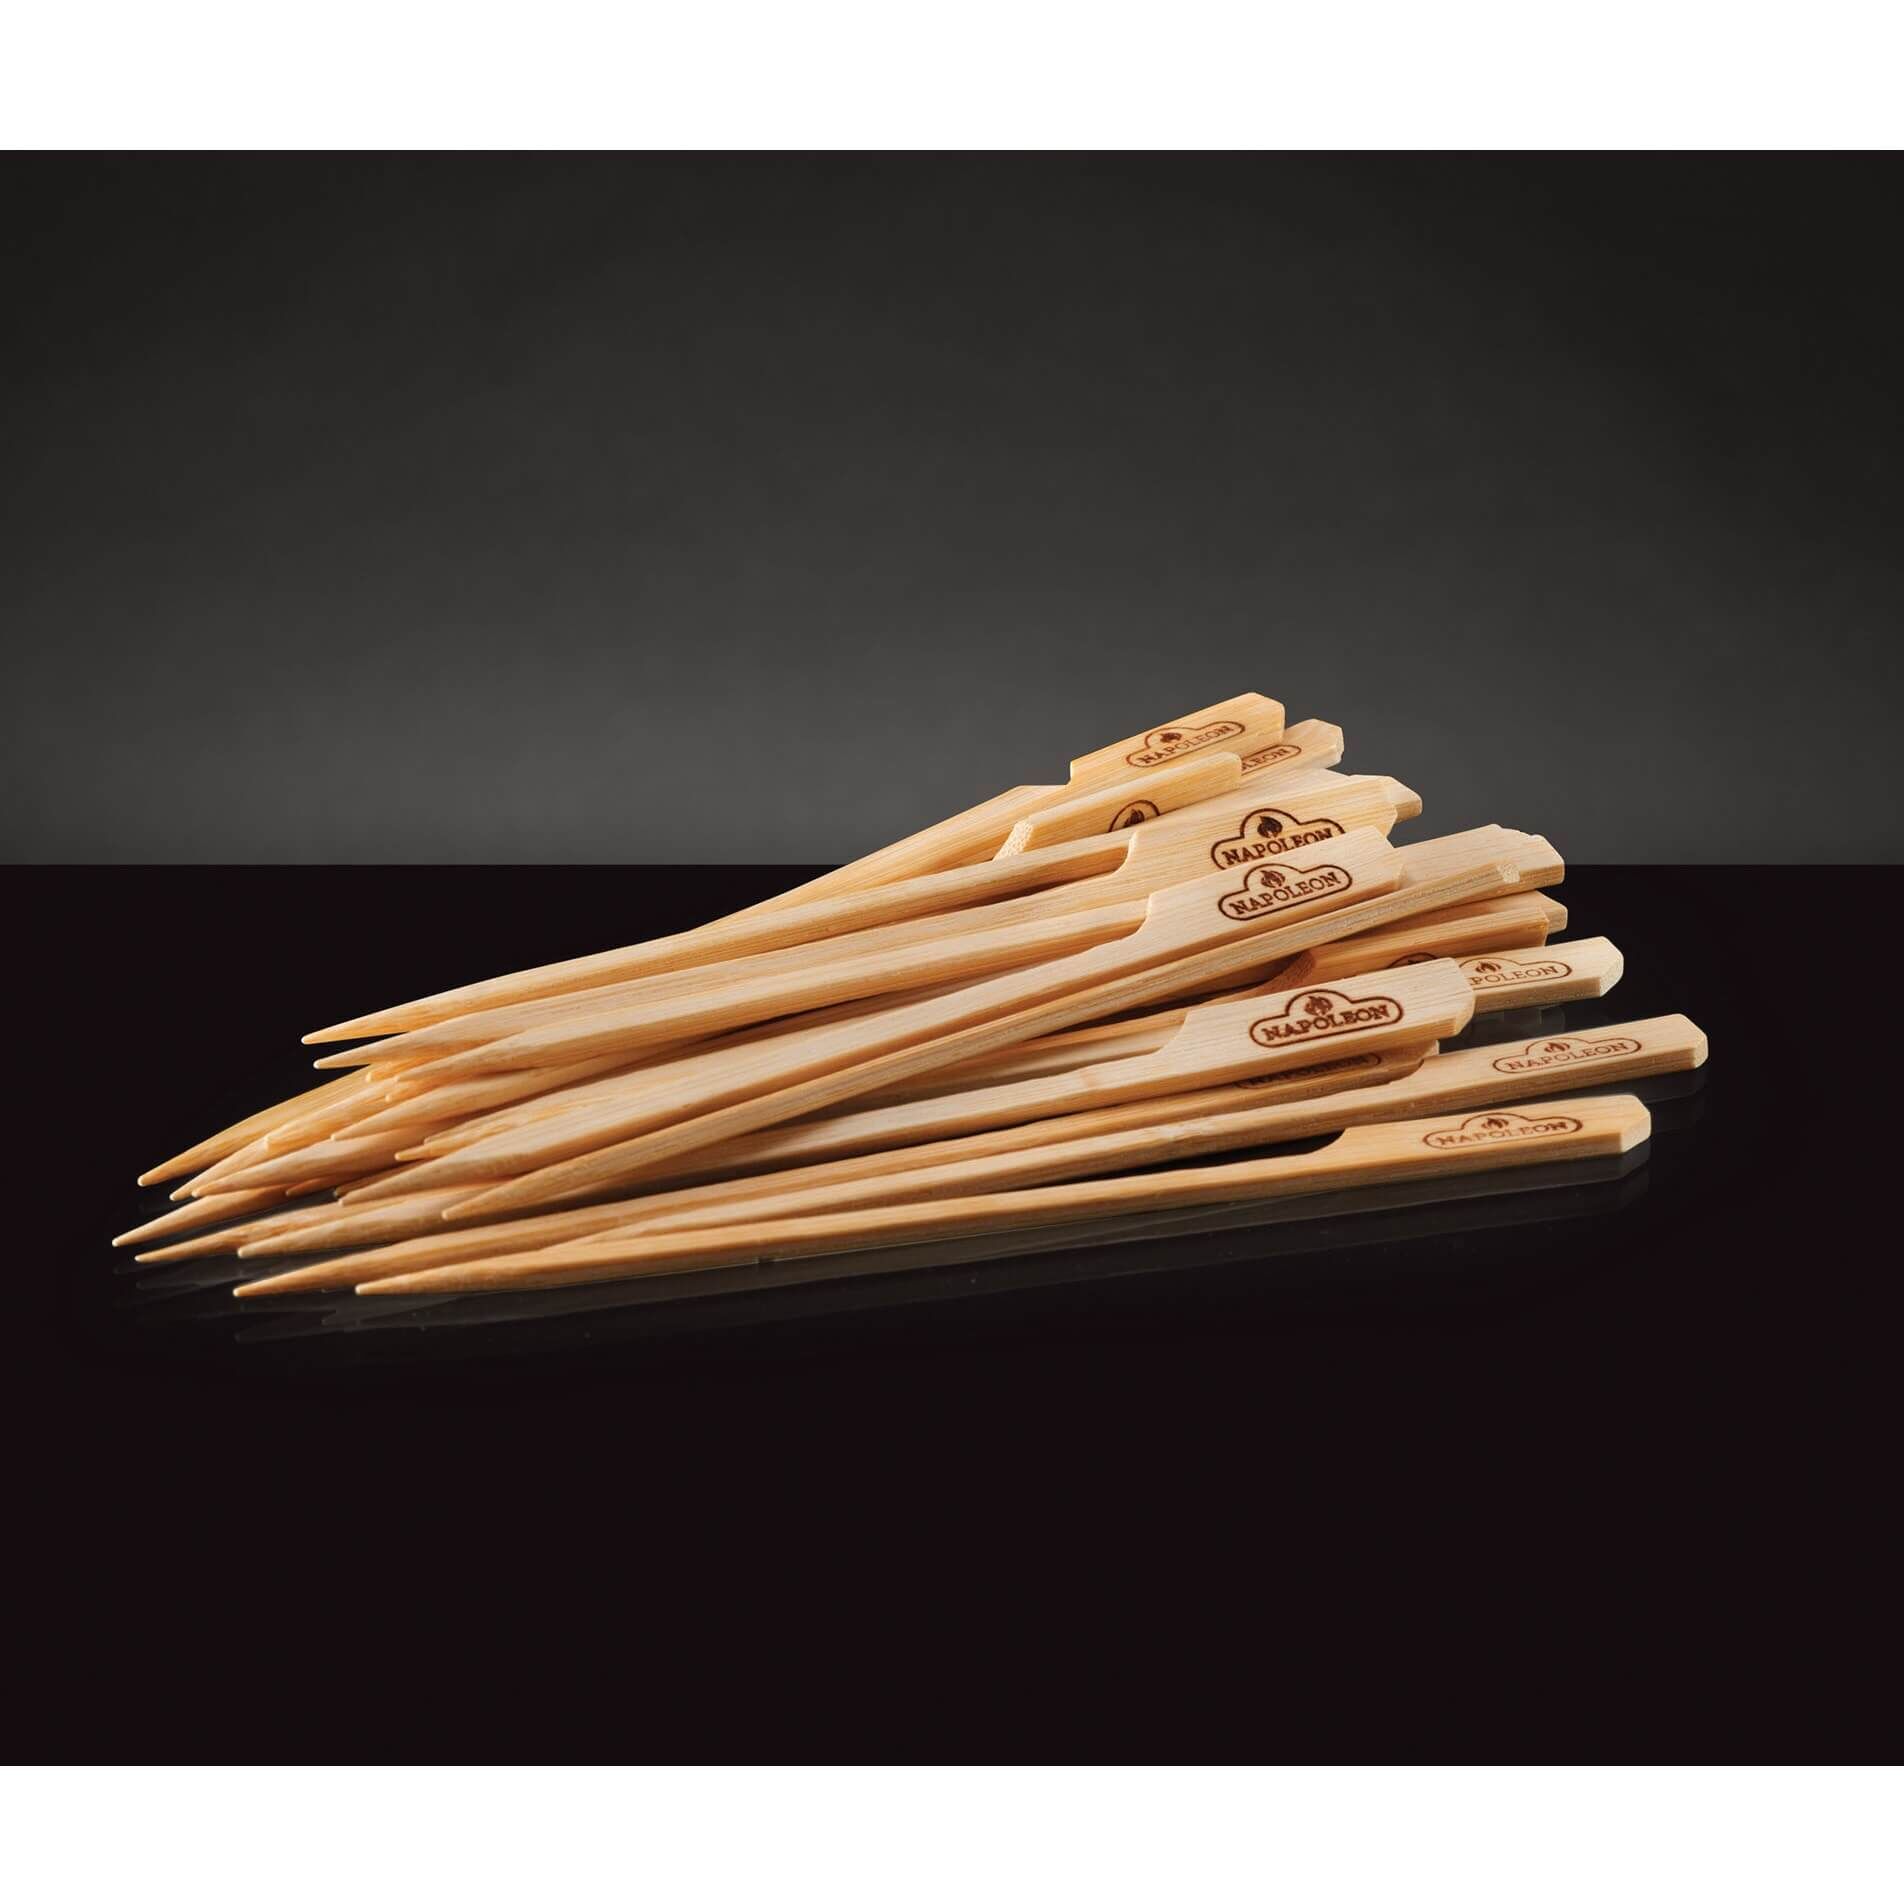 Napoleon Holz-Spieße aus Bambus, 15 cm lang (48 Stk) 70116